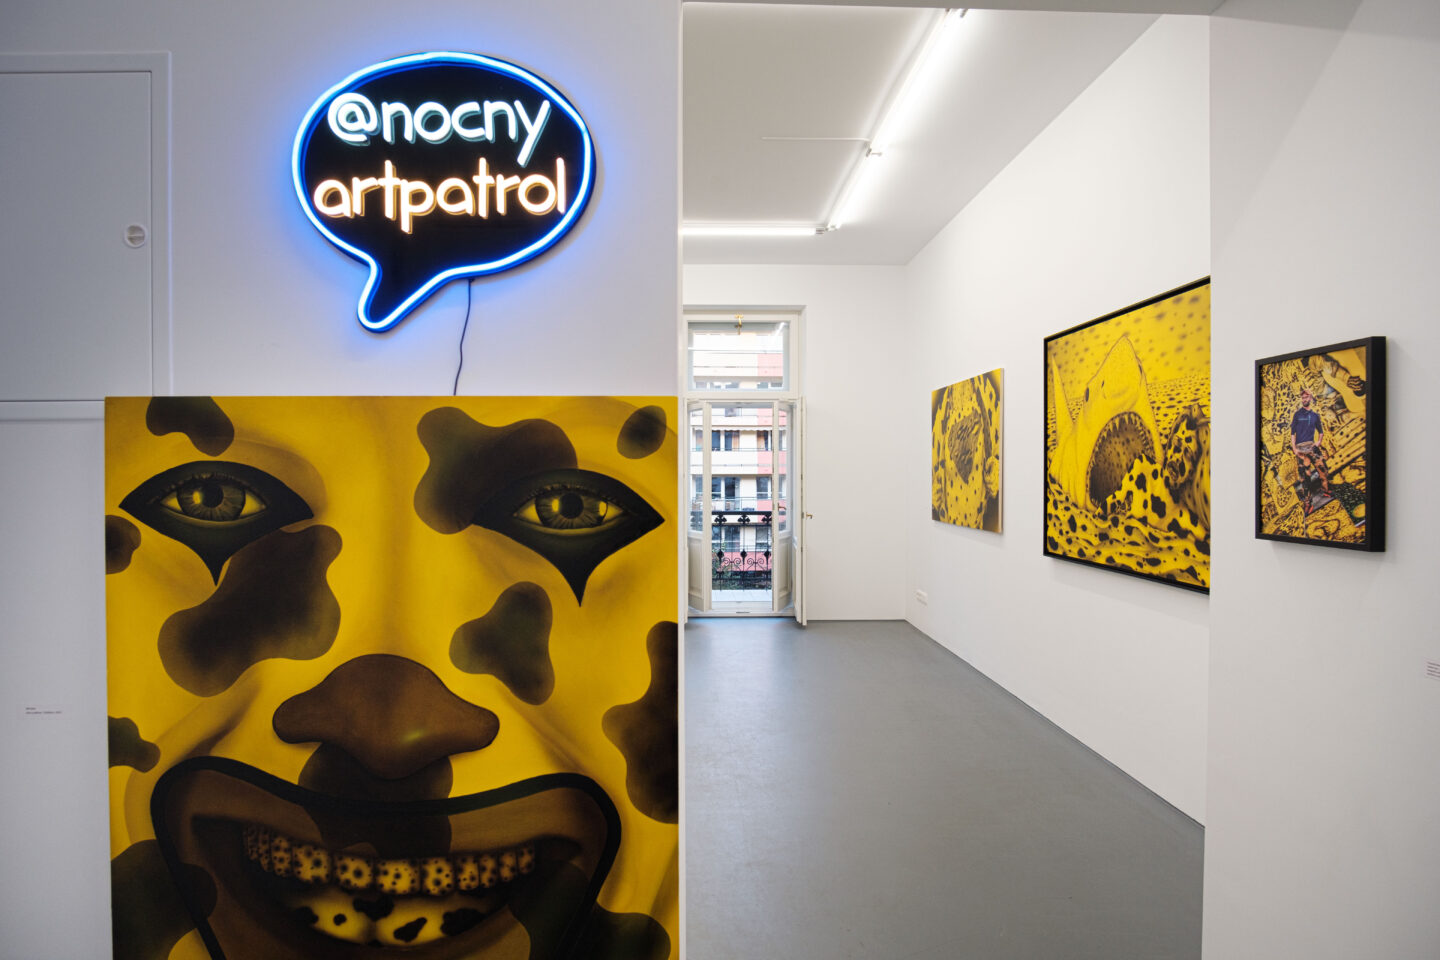 1) widok wystawy Dawid Czycz - Smells Like Teen Spirit, Galeria Nocny Art Patrol, fot. R. Korzeniowski